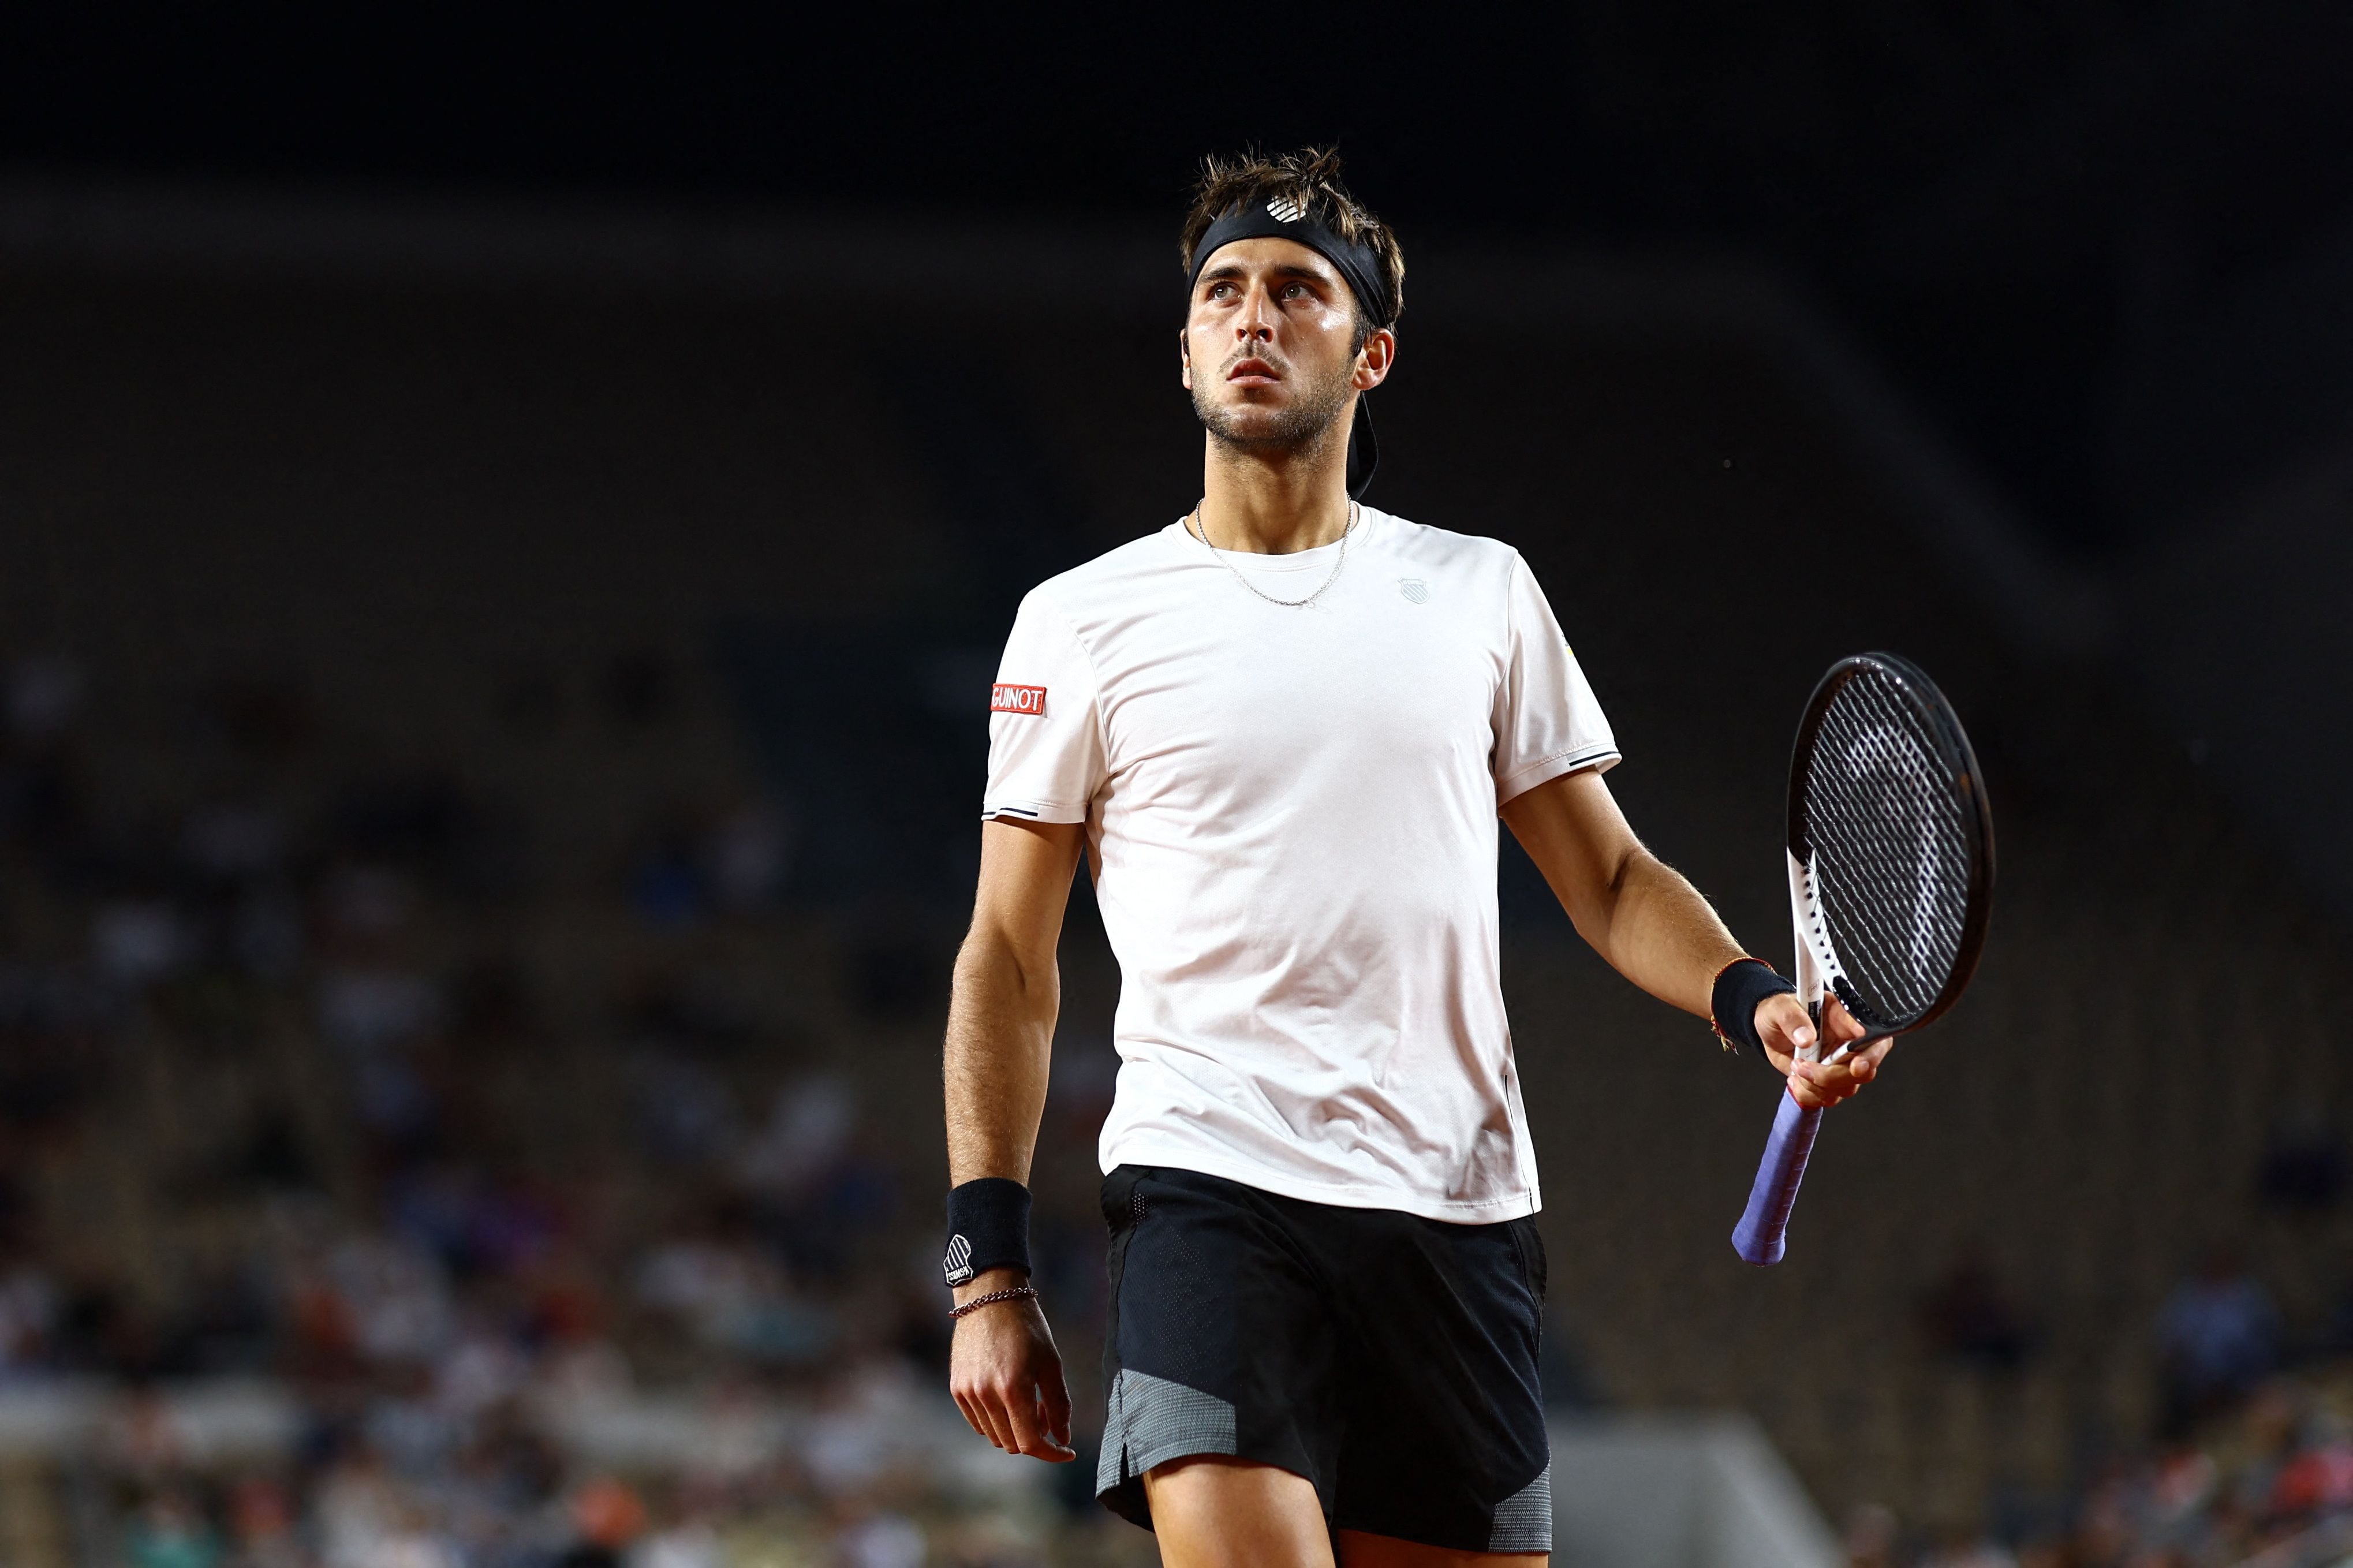 Tomás Etcheverry, la gran sorpresa de Roland Garros, busca hacer historia y alcanzar semifinales del torneo (Foto: Reuters)